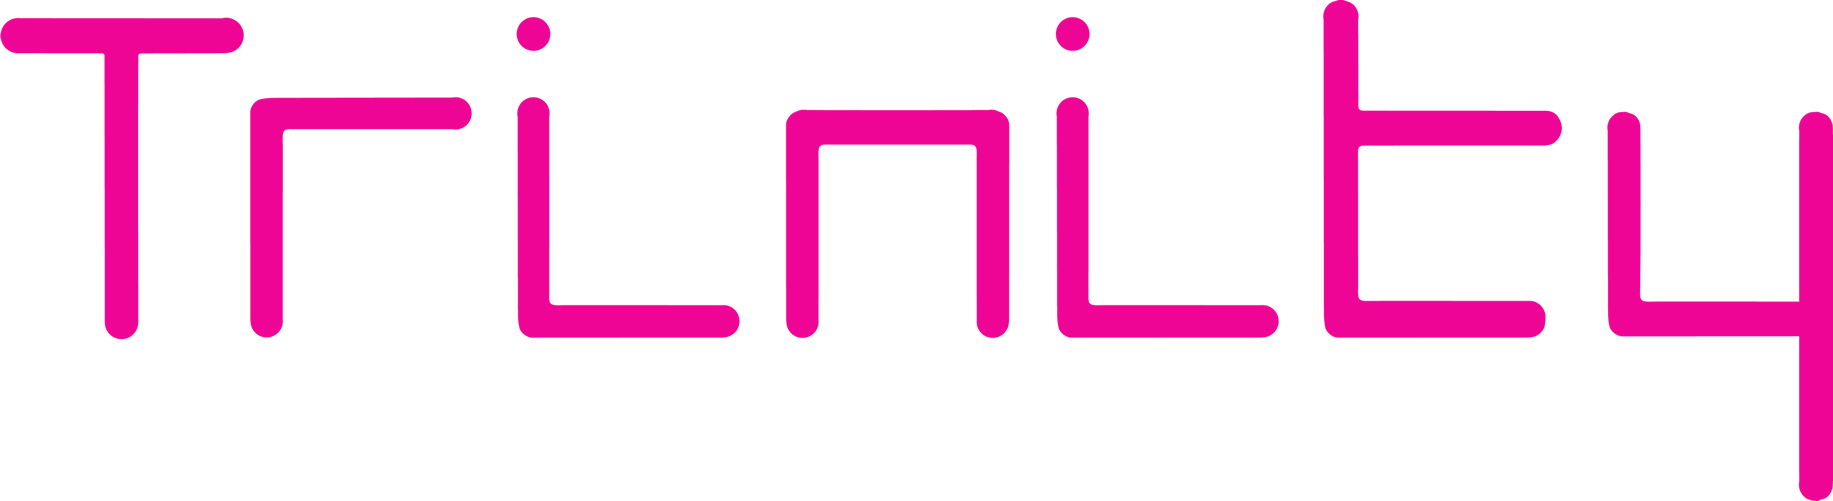 Letz Zep at Trinity logo